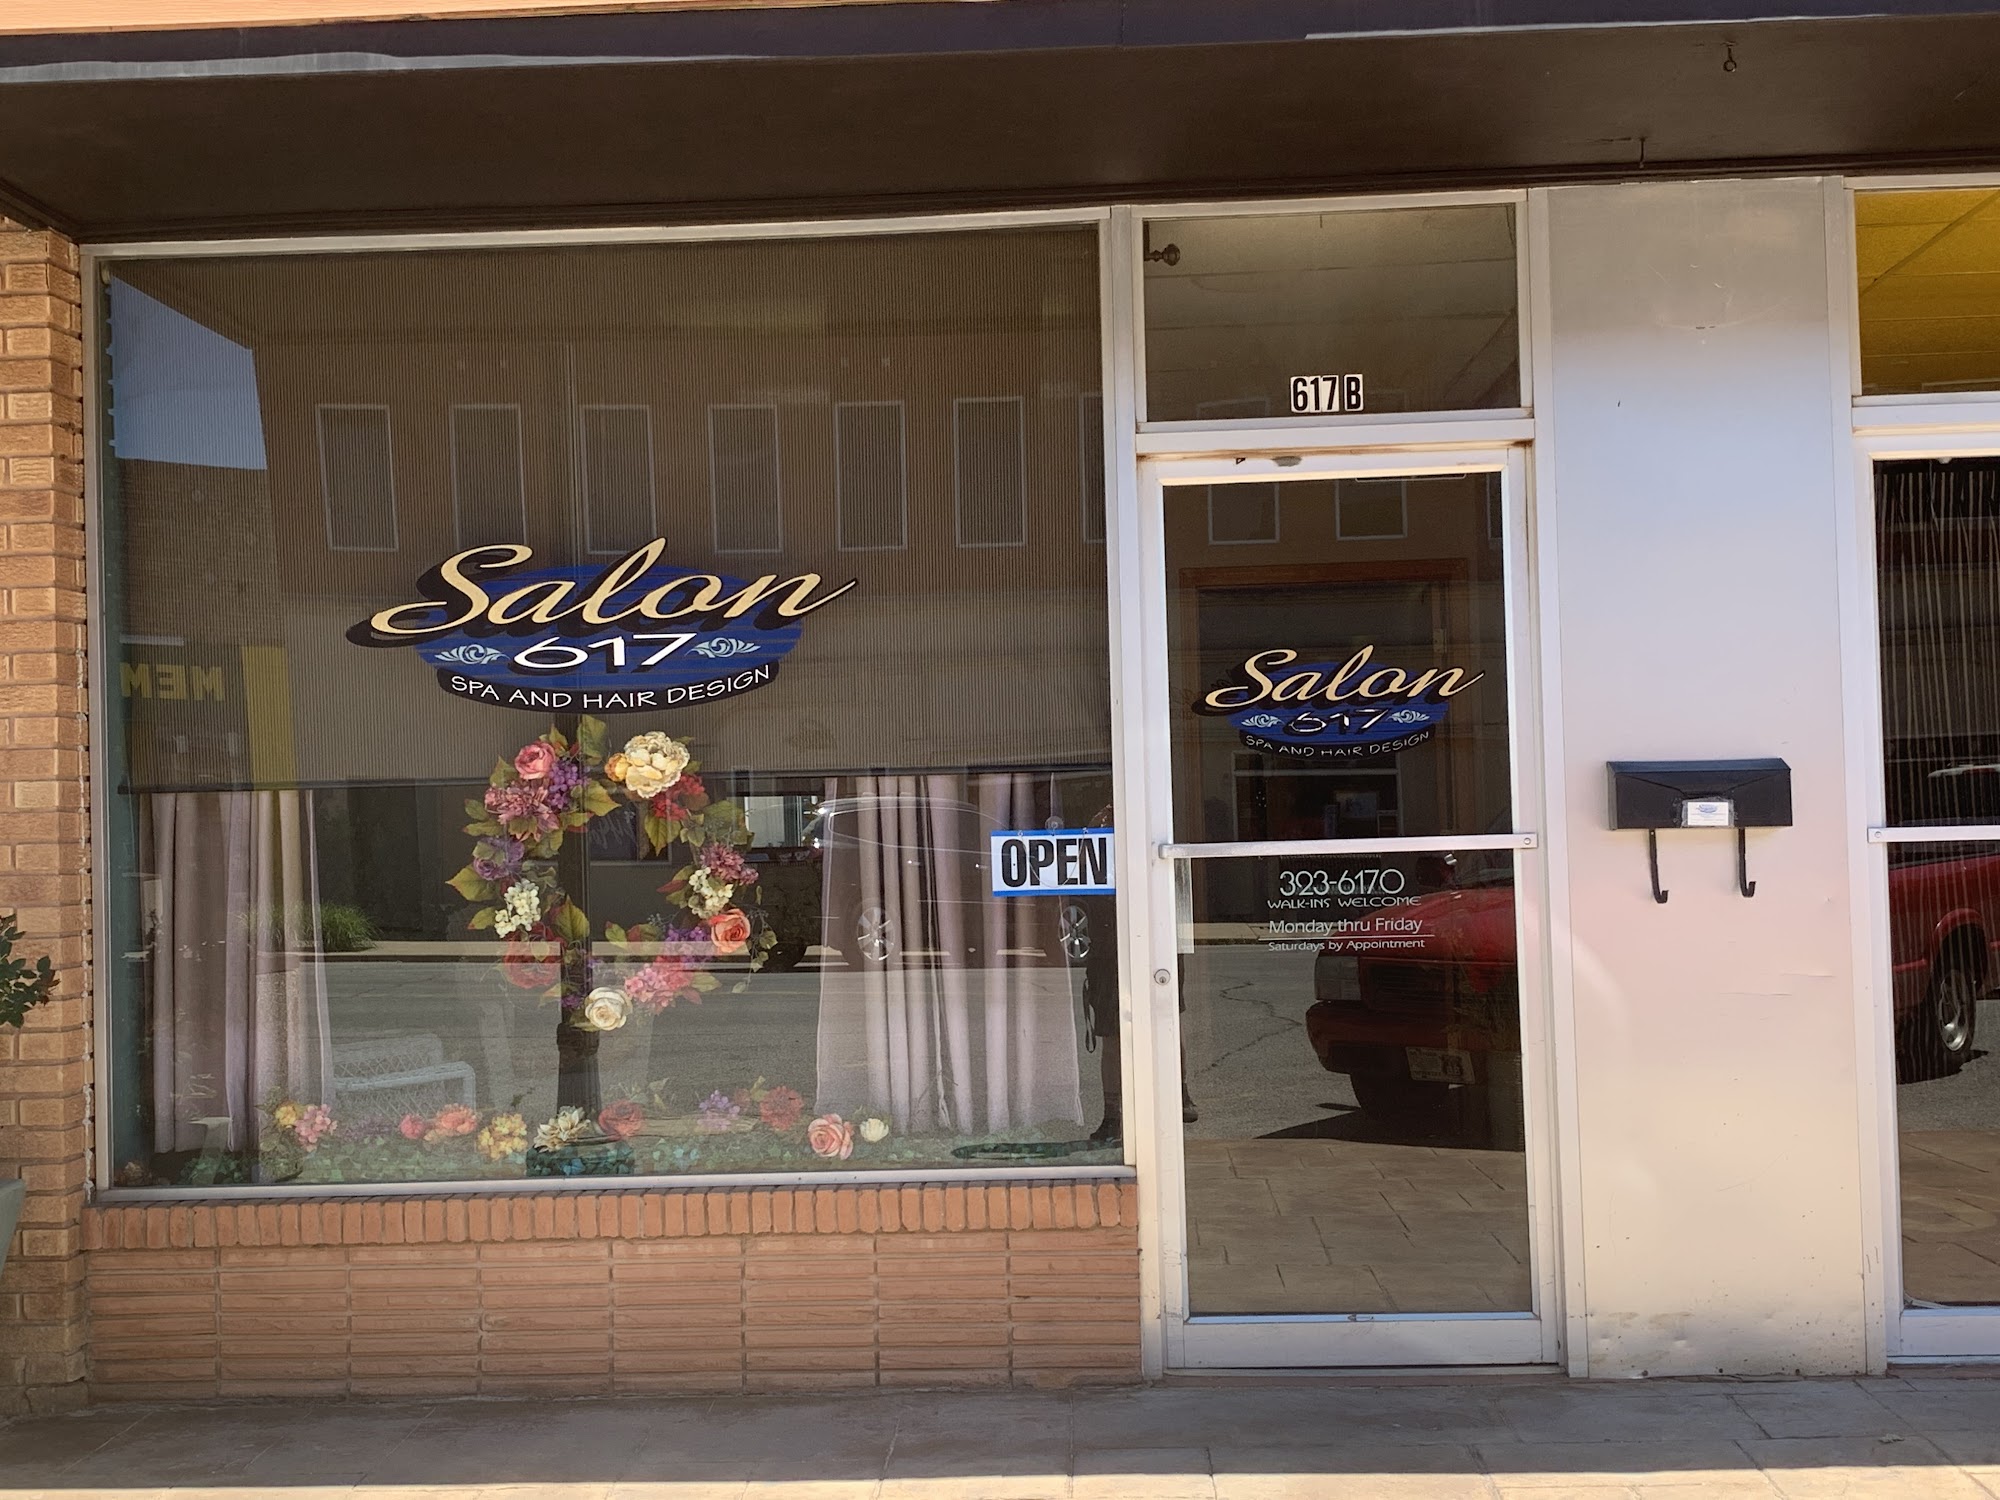 Salon 617 Spa & Hair Design 617 Frisco Ave, Clinton Oklahoma 73601